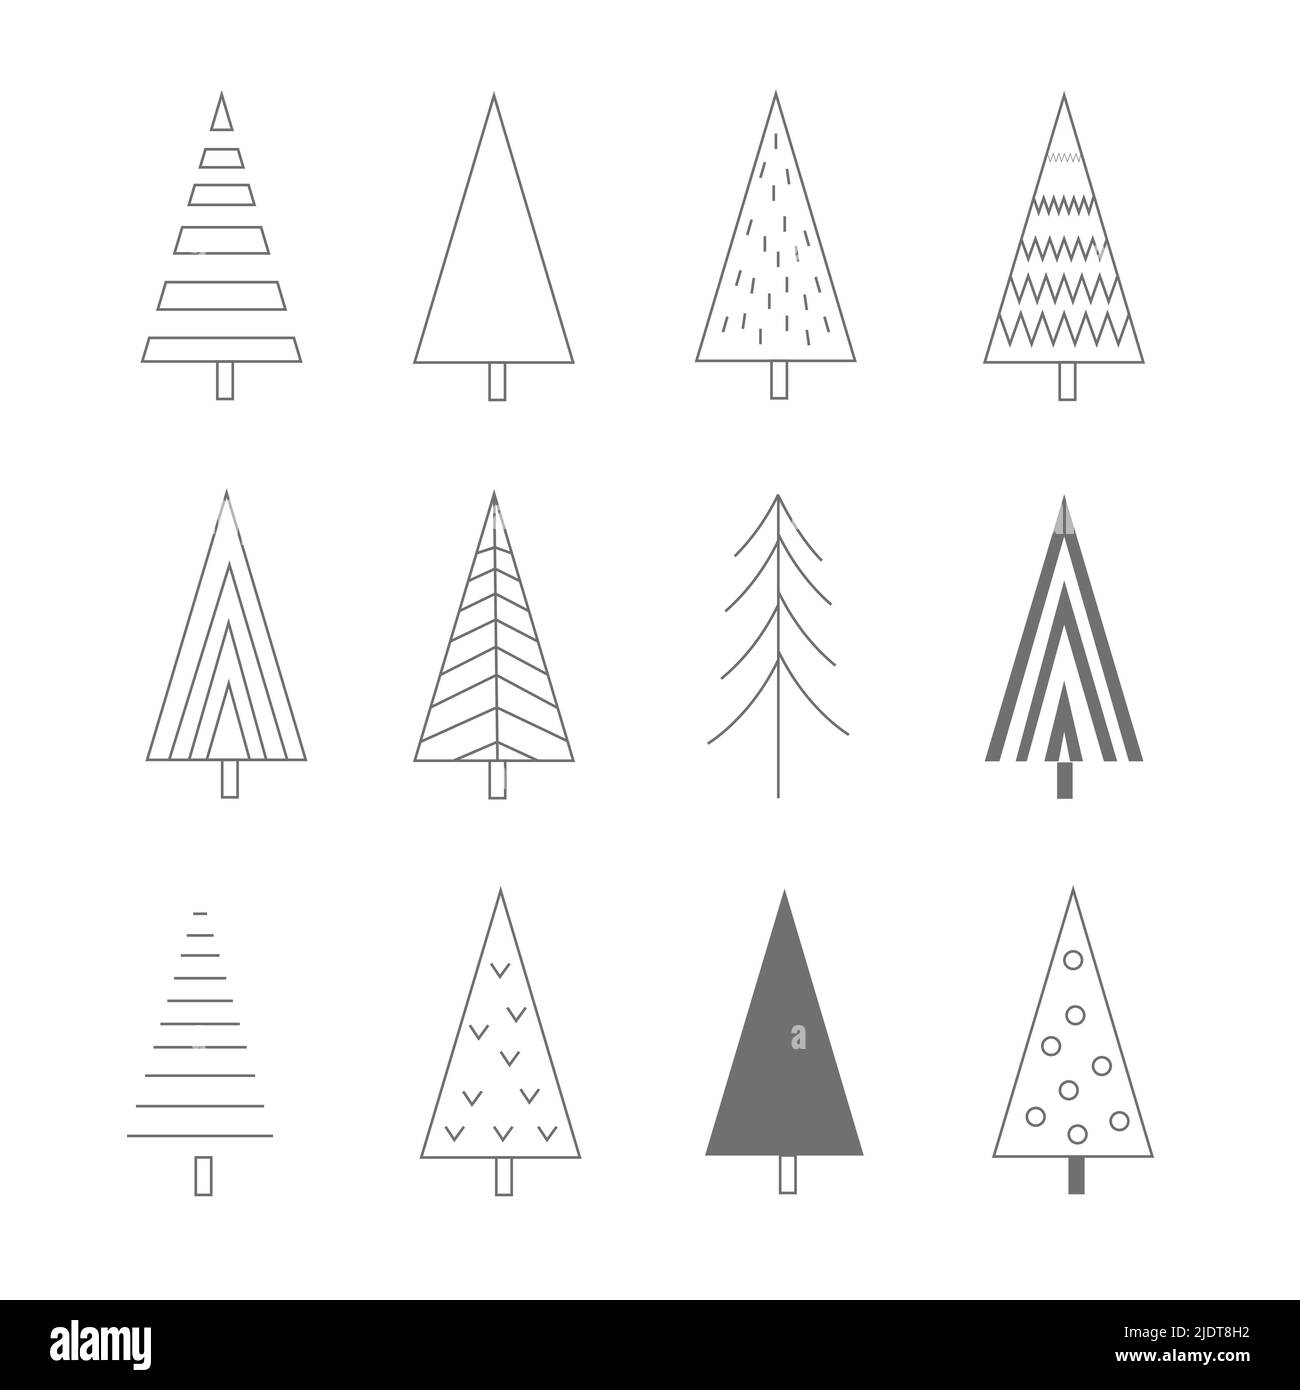 Weihnachtsbaum lineare Symbole gesetzt, Vektor Umriss Zeichnung. Xmas neues Vorabend-Baum-Symbol, einfache Piktogramm-Sammlung. Designelemente für die Wintersaison isoliert Stock Vektor